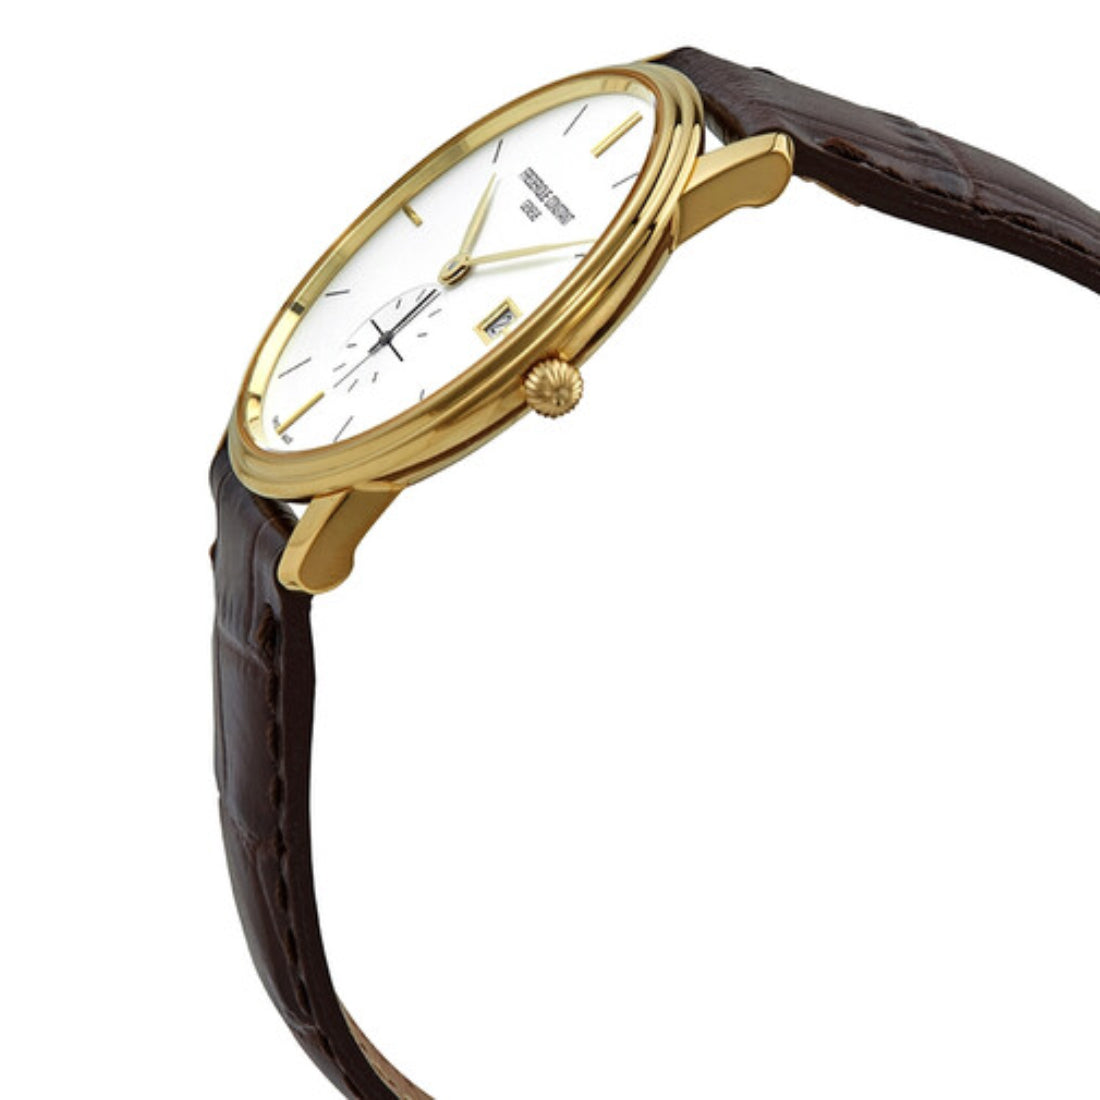 Frederique Constant Men's Quartz Watch, White Dial - FC-0136